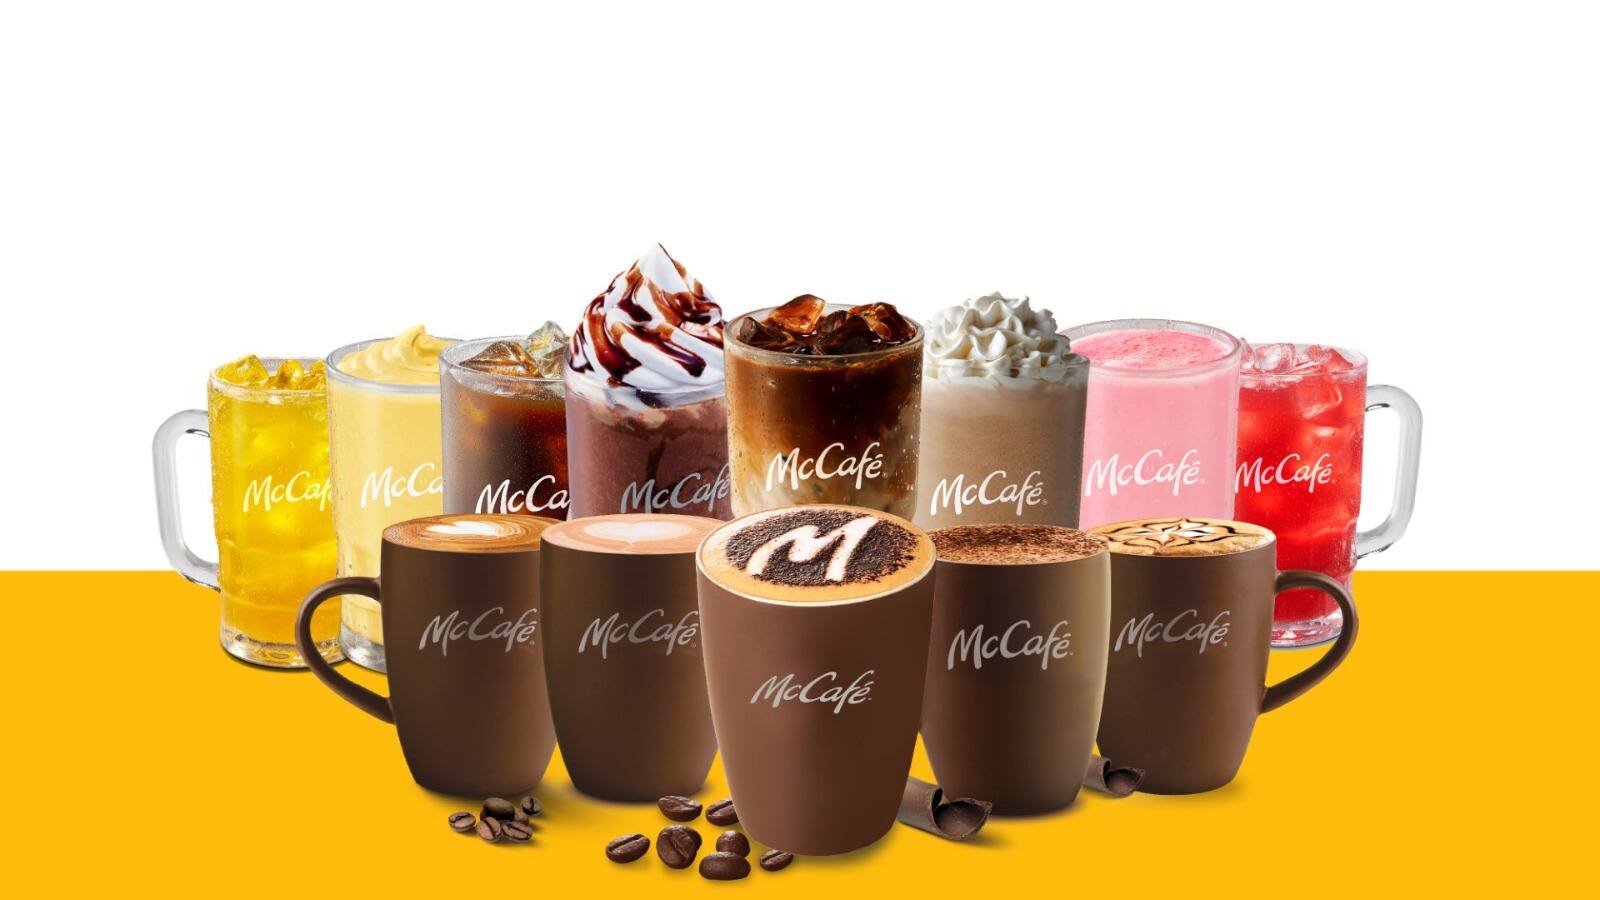 McDonalds Announces New Cakes at Japan McCafes  LIVE JAPAN travel guide